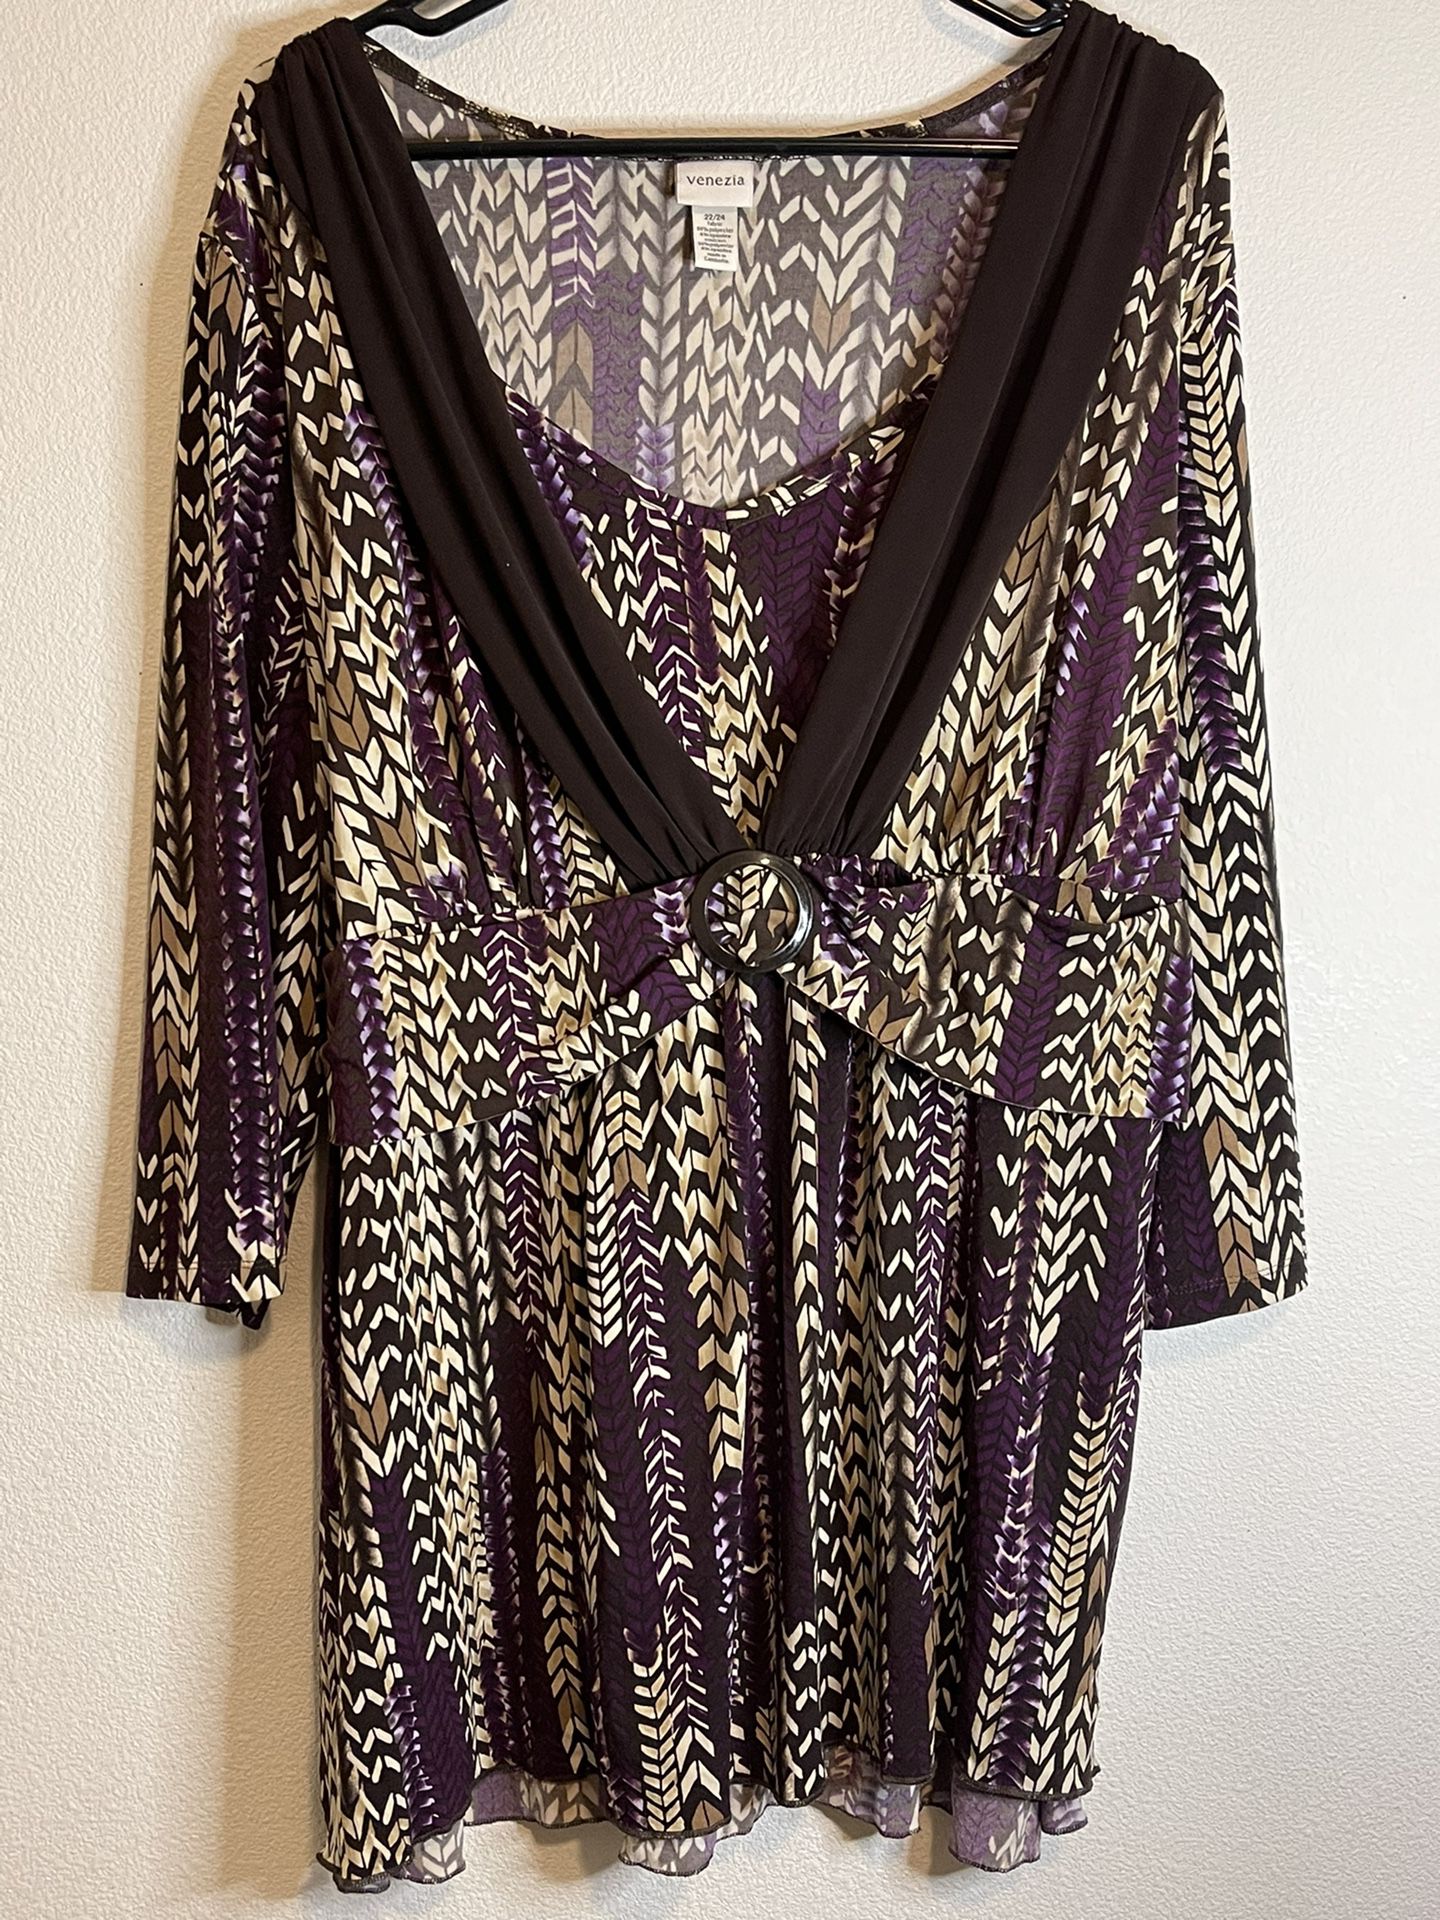 Venezia brown purple tan tunic long shirt blouse top womens plus size 22/24